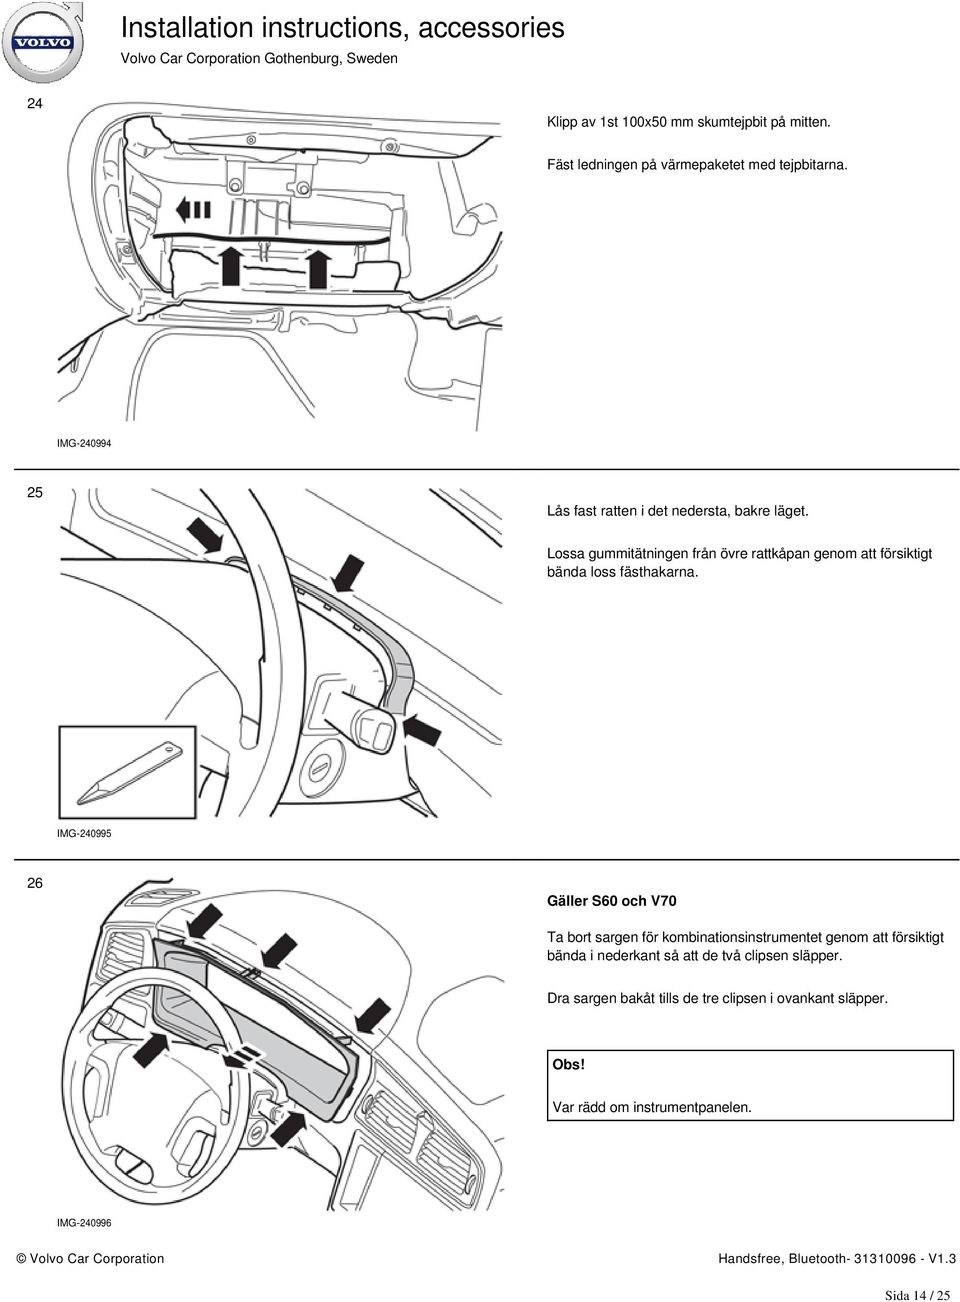 Lossa gummitätningen från övre rattkåpan genom att försiktigt bända loss fästhakarna.